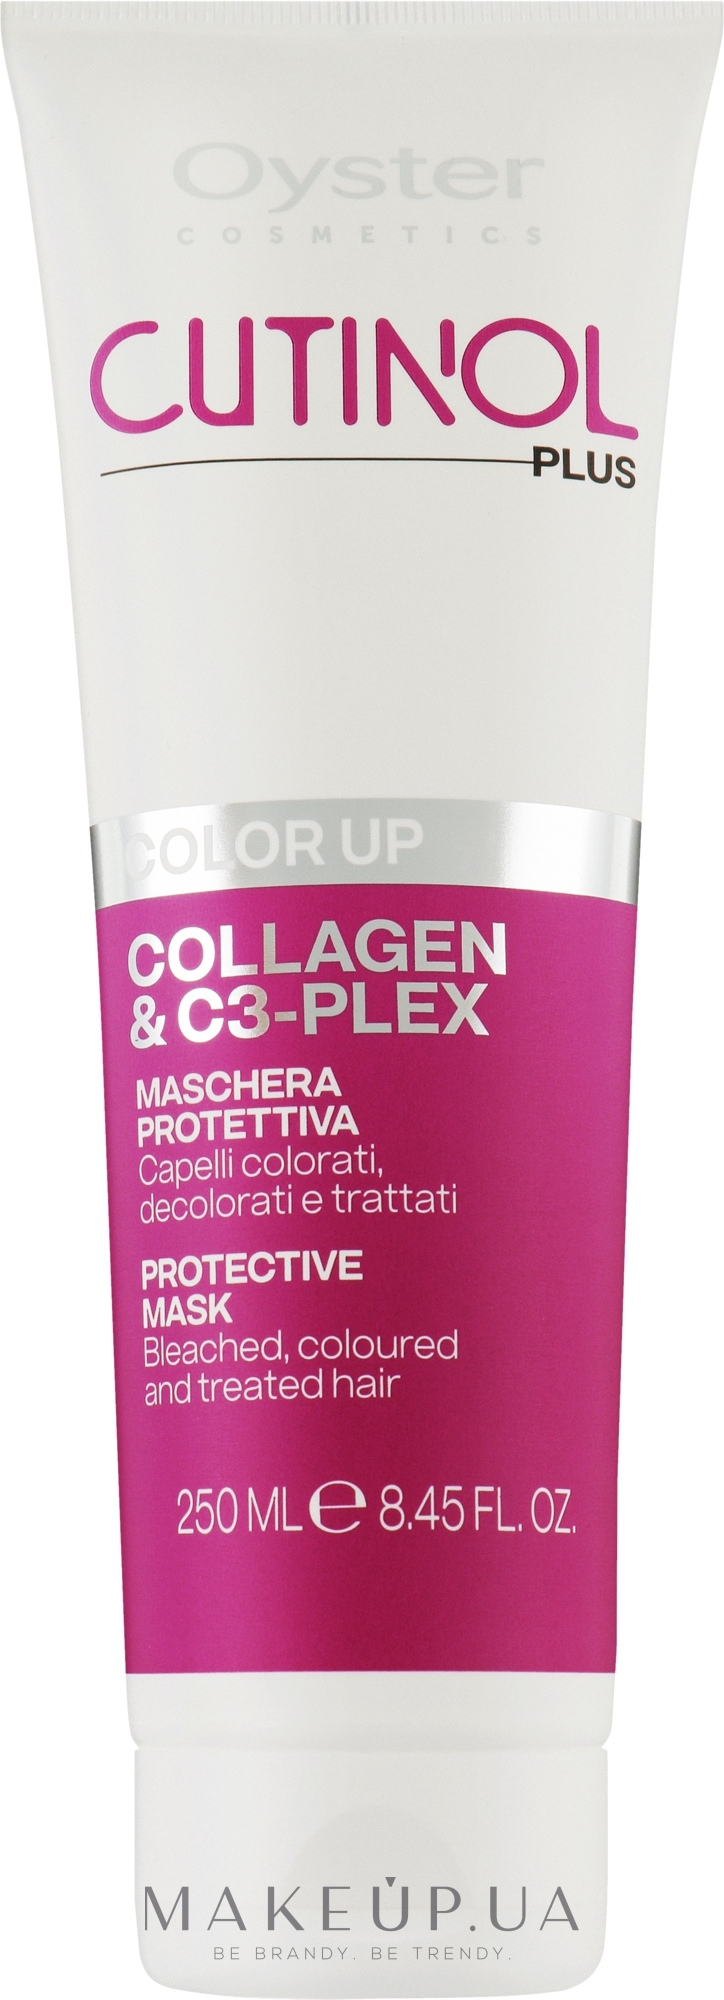 Маска для окрашенных волос - Oyster Cutinol Plus Collagen & C3-Plex Color Up Protective Mask — фото 250ml